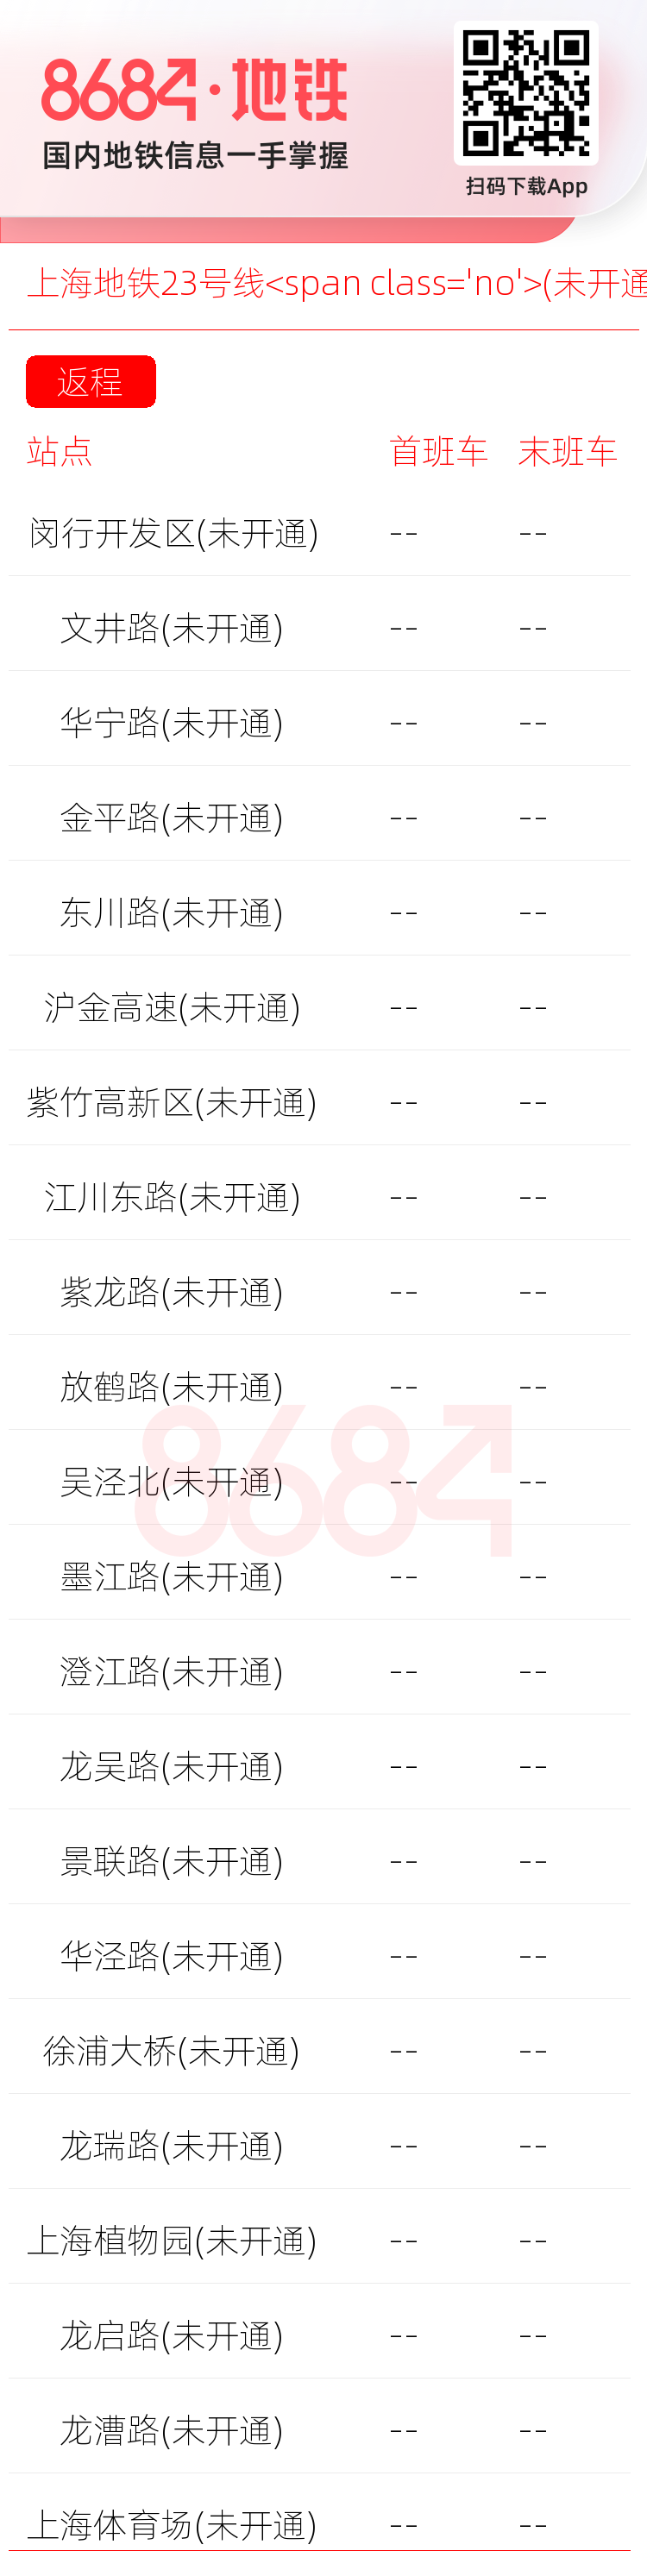 上海地铁23号线<span class='no'>(未开通)</span>运营时间表